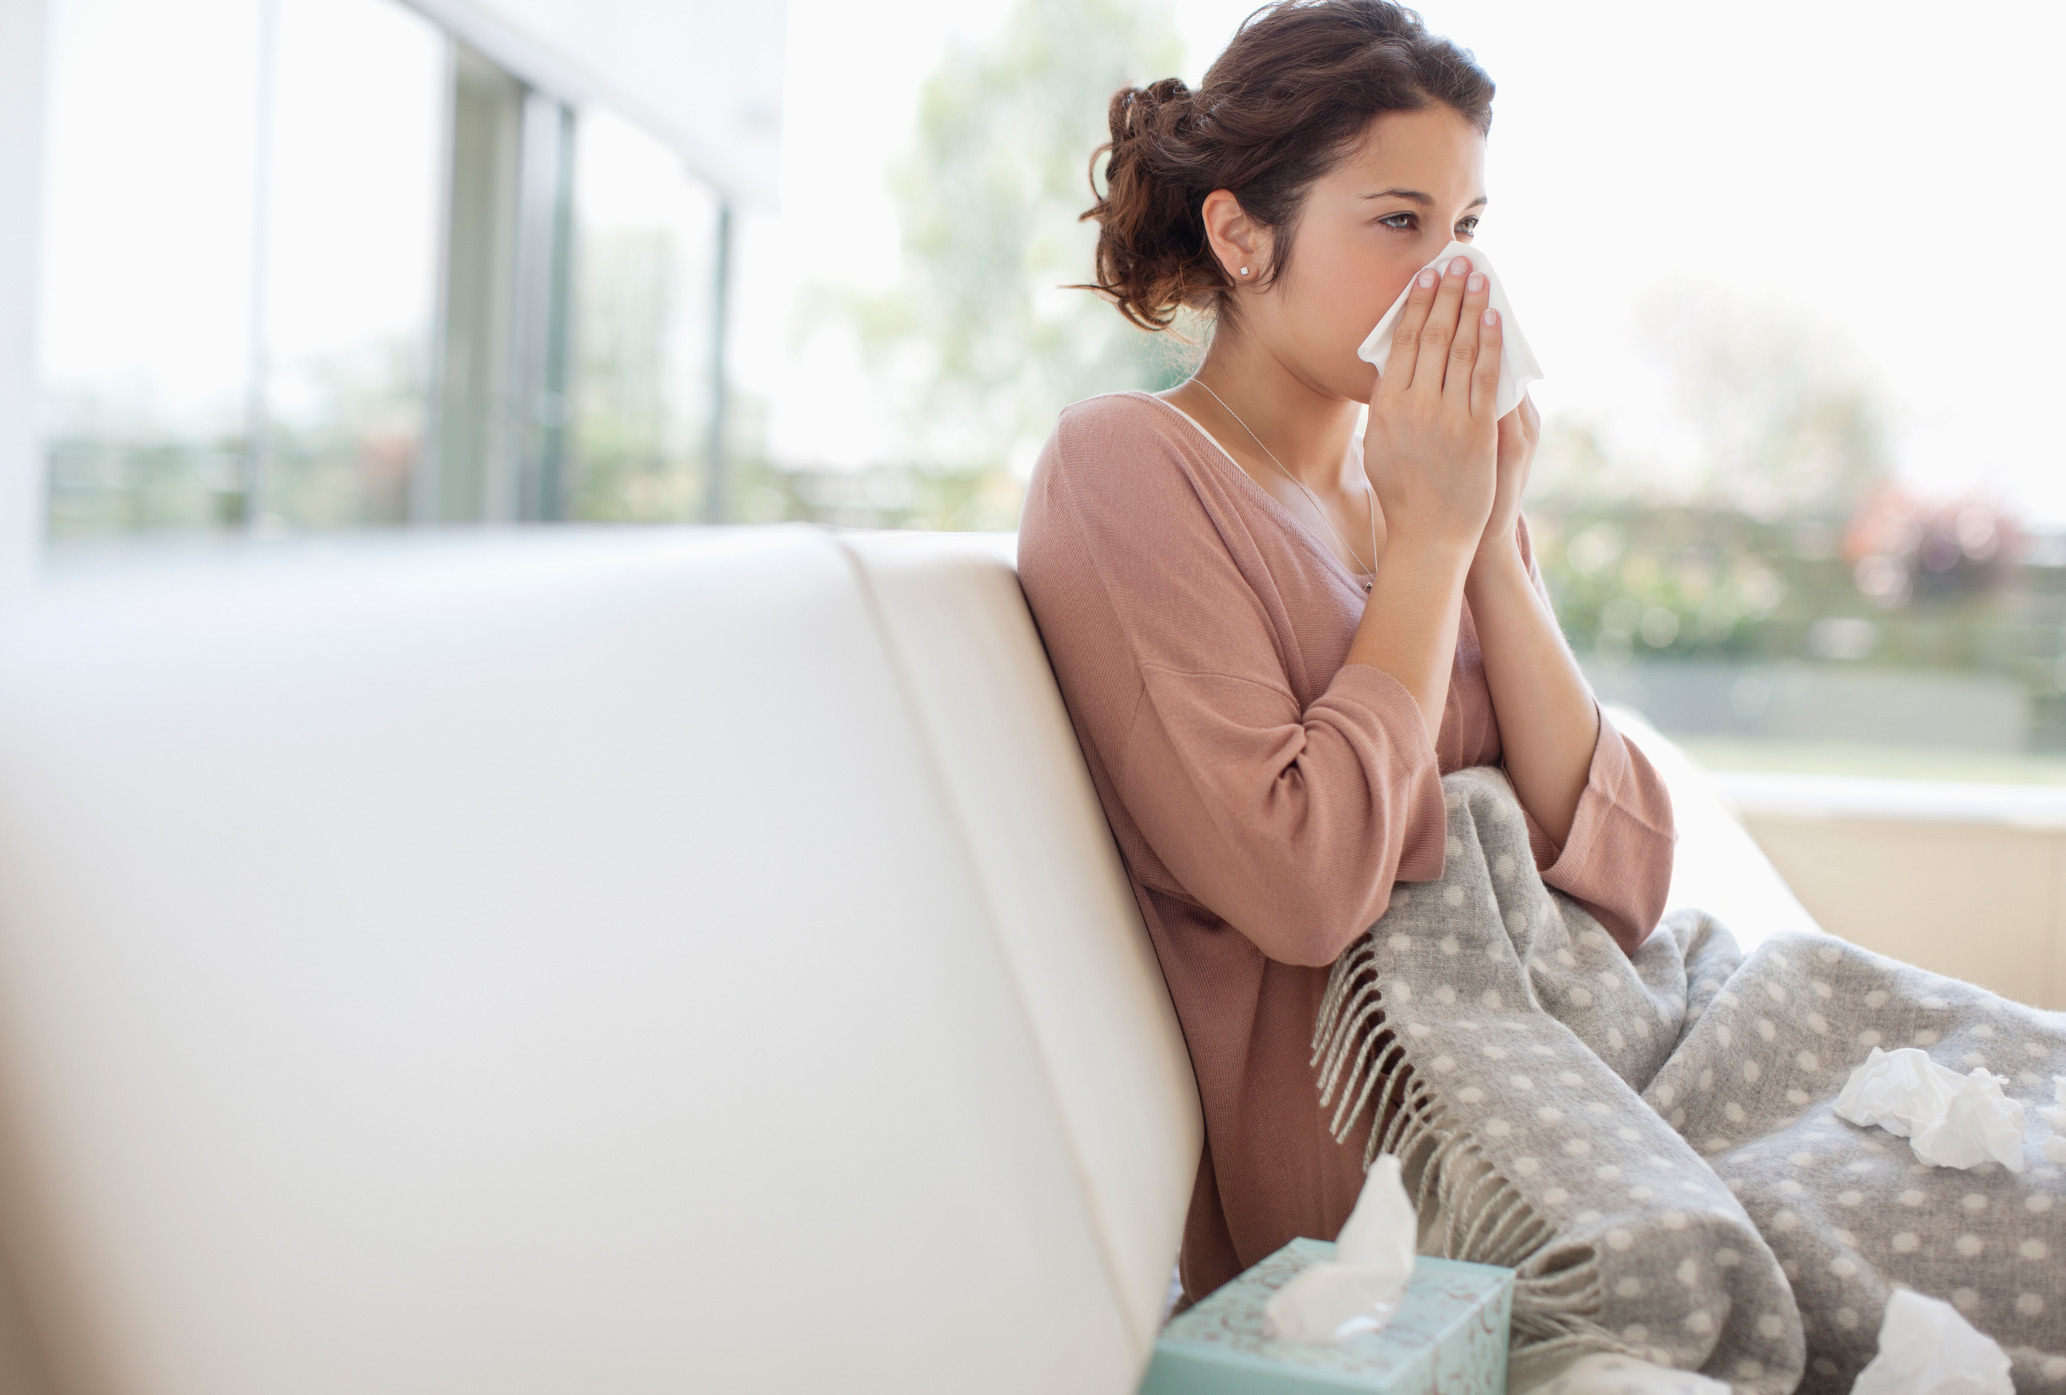 Expert Q&A: The Flu